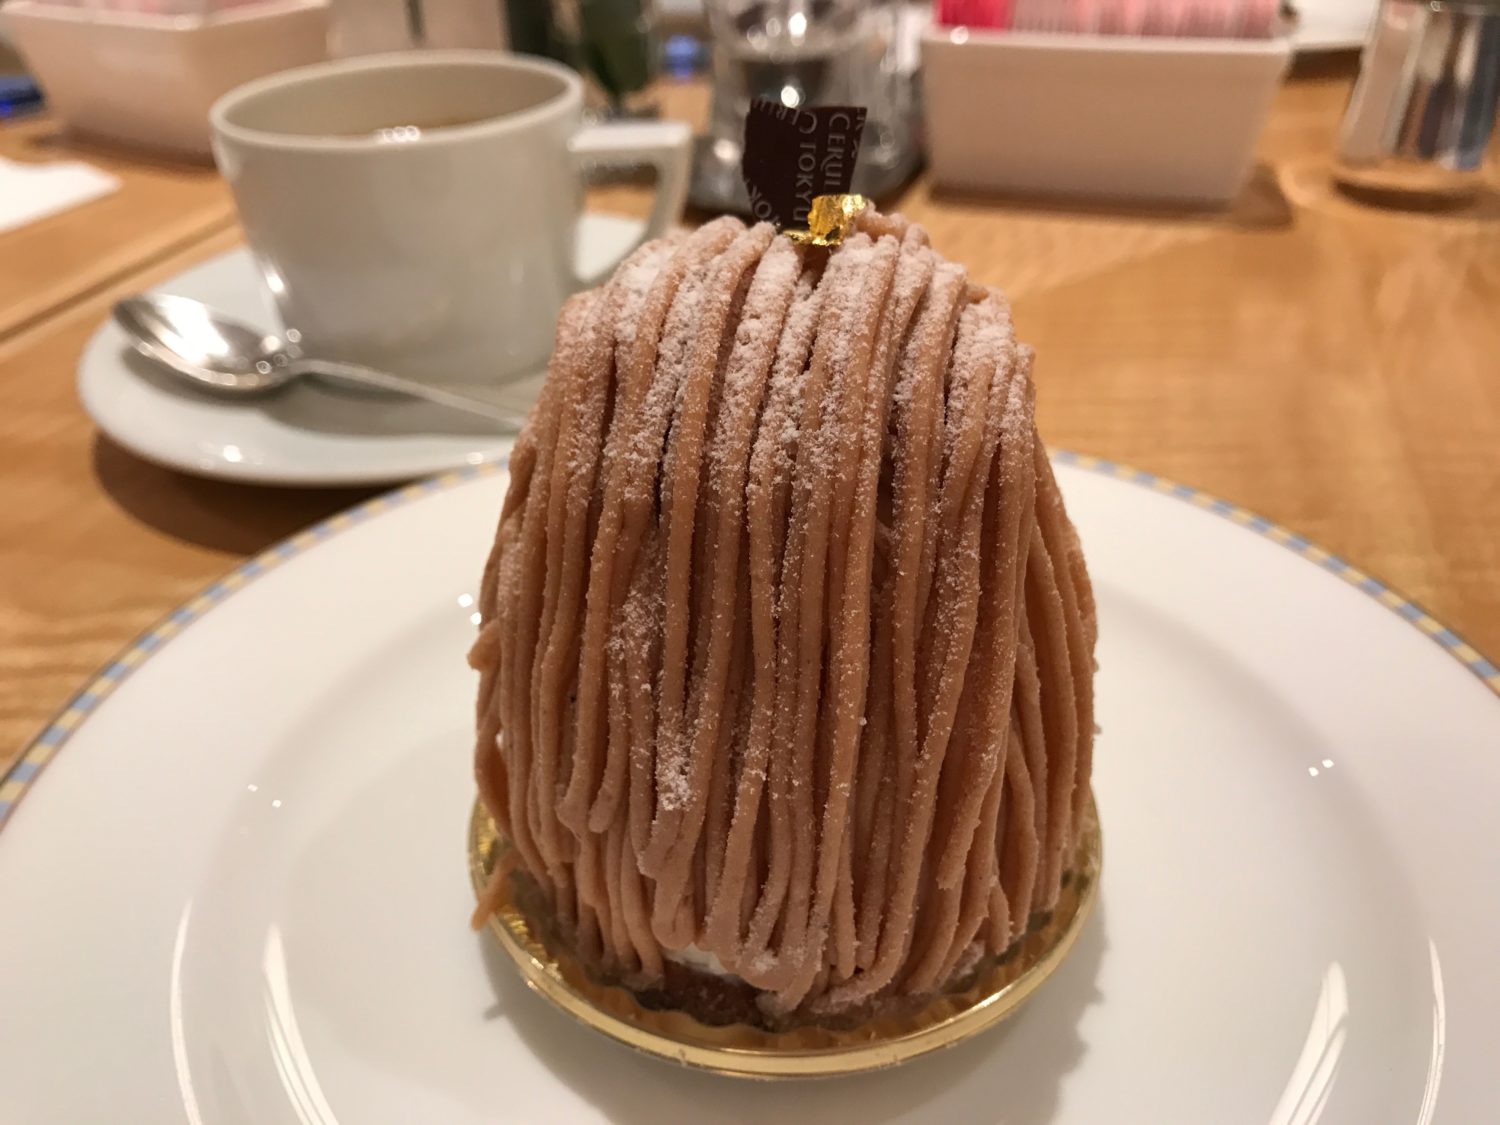 渋谷セルリアンタワー東急ホテルでローラン・ジャナン プロデュースのケーキを食べて来た